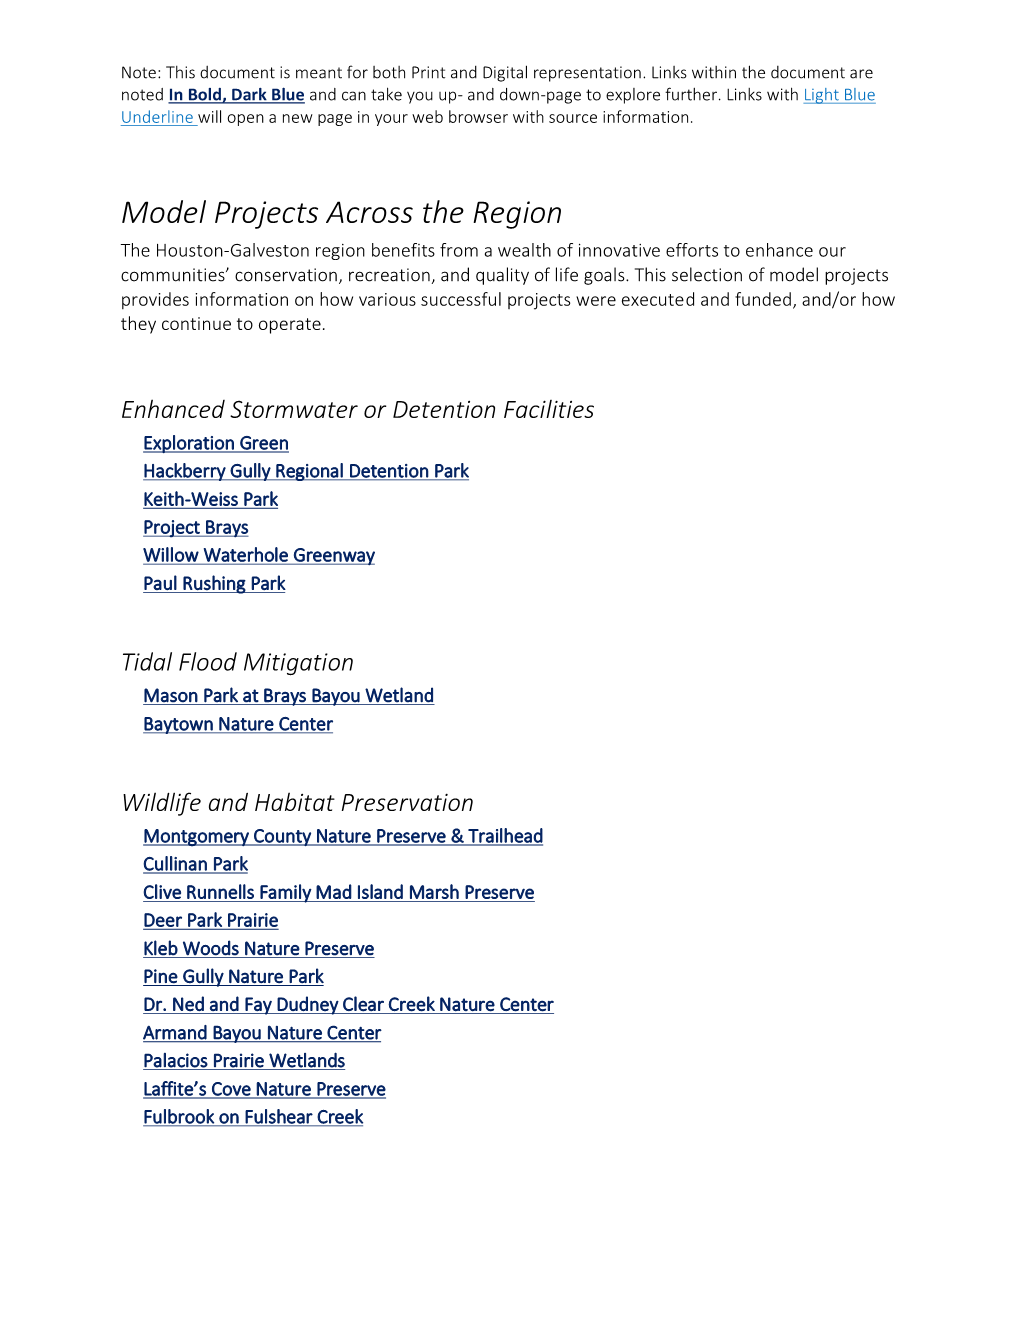 Model Projects Across the Region